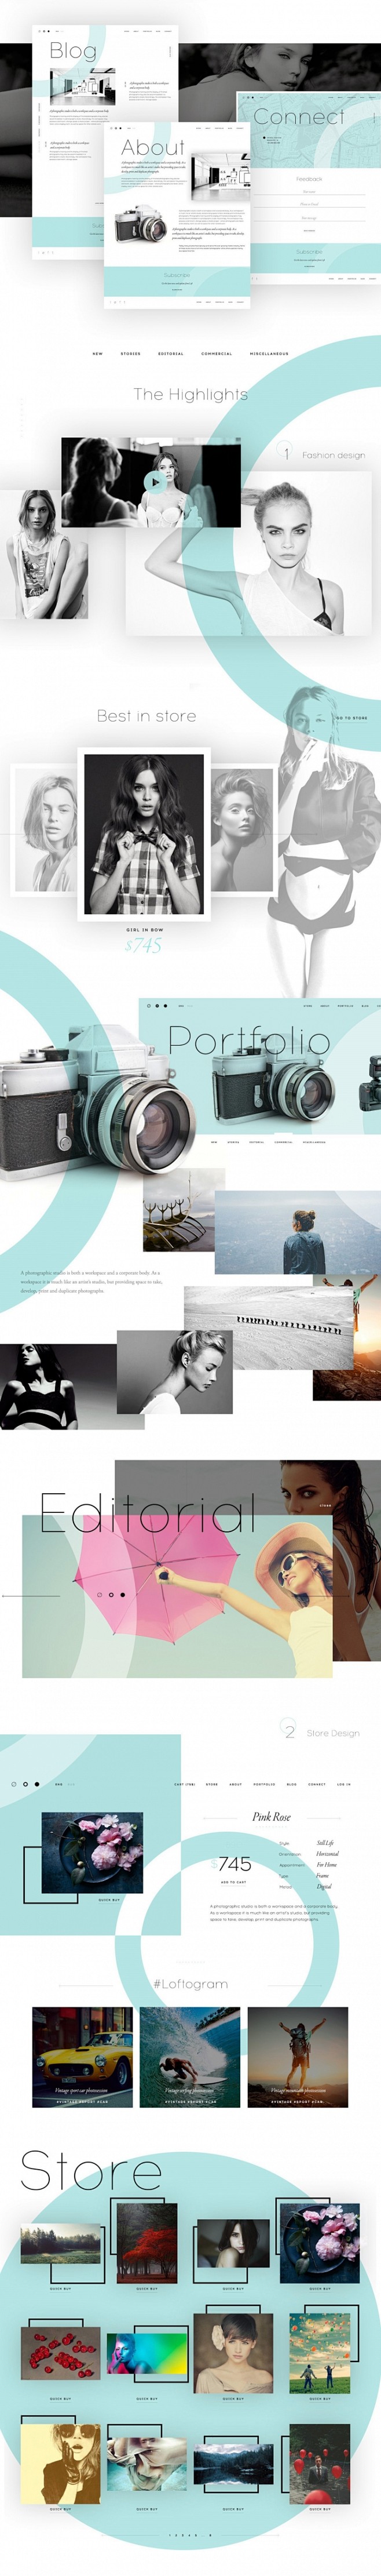 Loft 摄影工作室品牌和网站设计 设计...